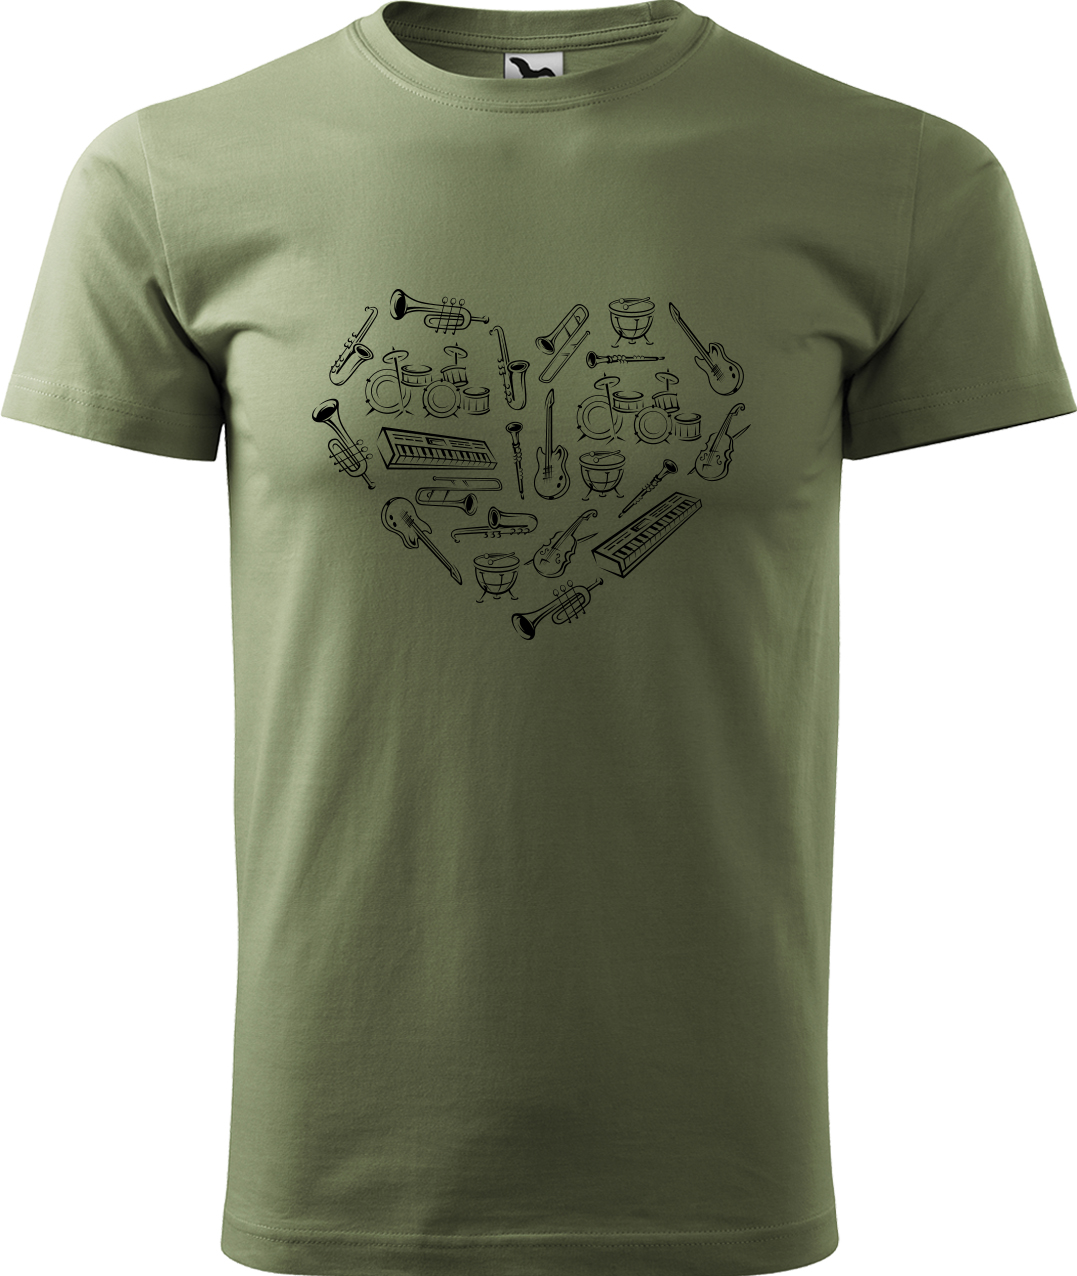 Pánské tričko s kytarou - Srdce z nástrojů Velikost: S, Barva: Světlá khaki (28), Střih: pánský